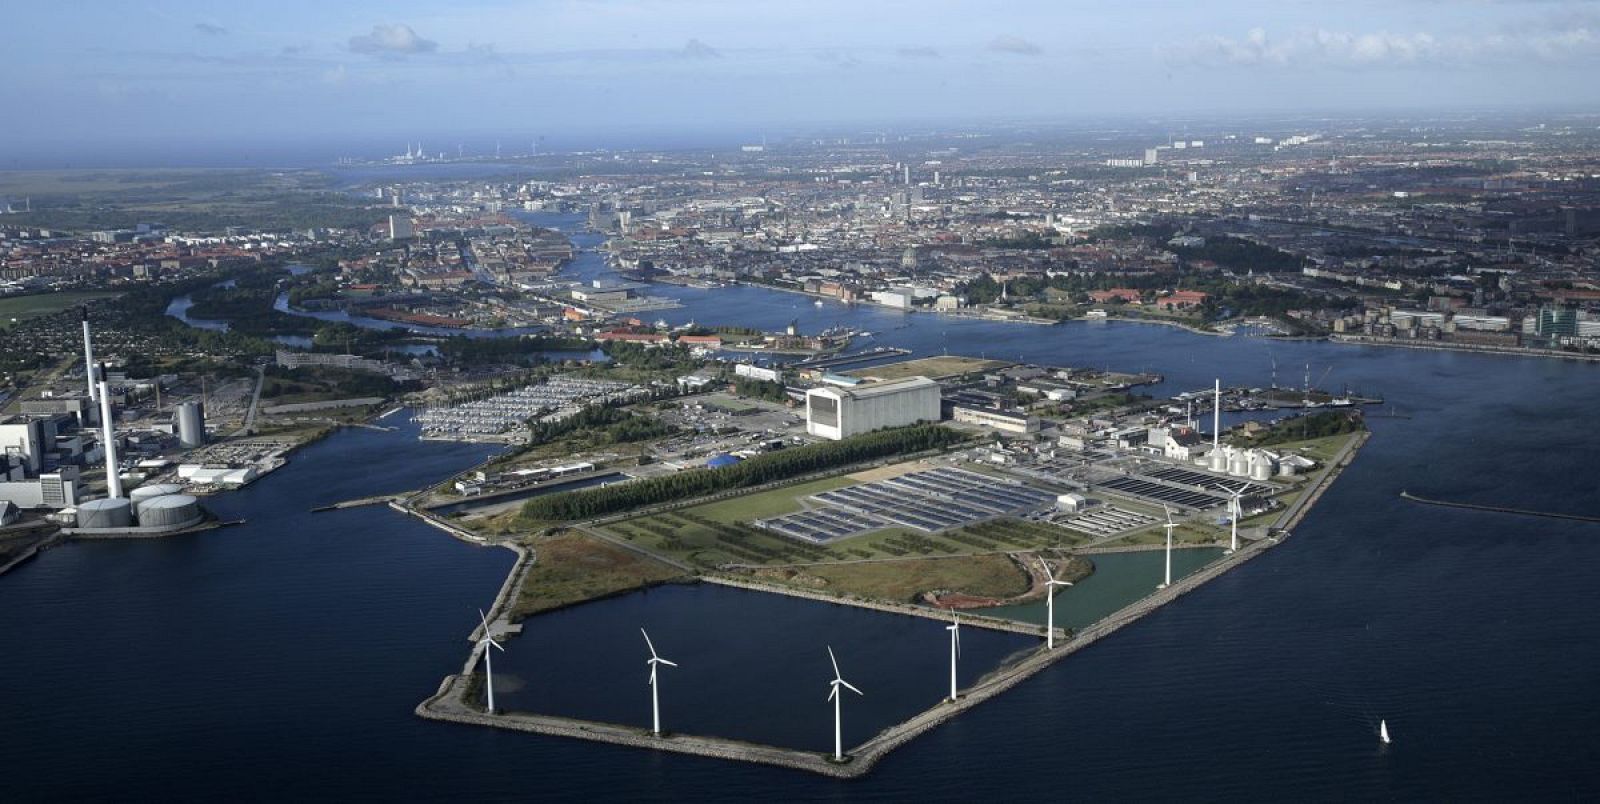 Vista aérea de la isla de Refshaleøen, donde se celebrará Eurovisión 2014